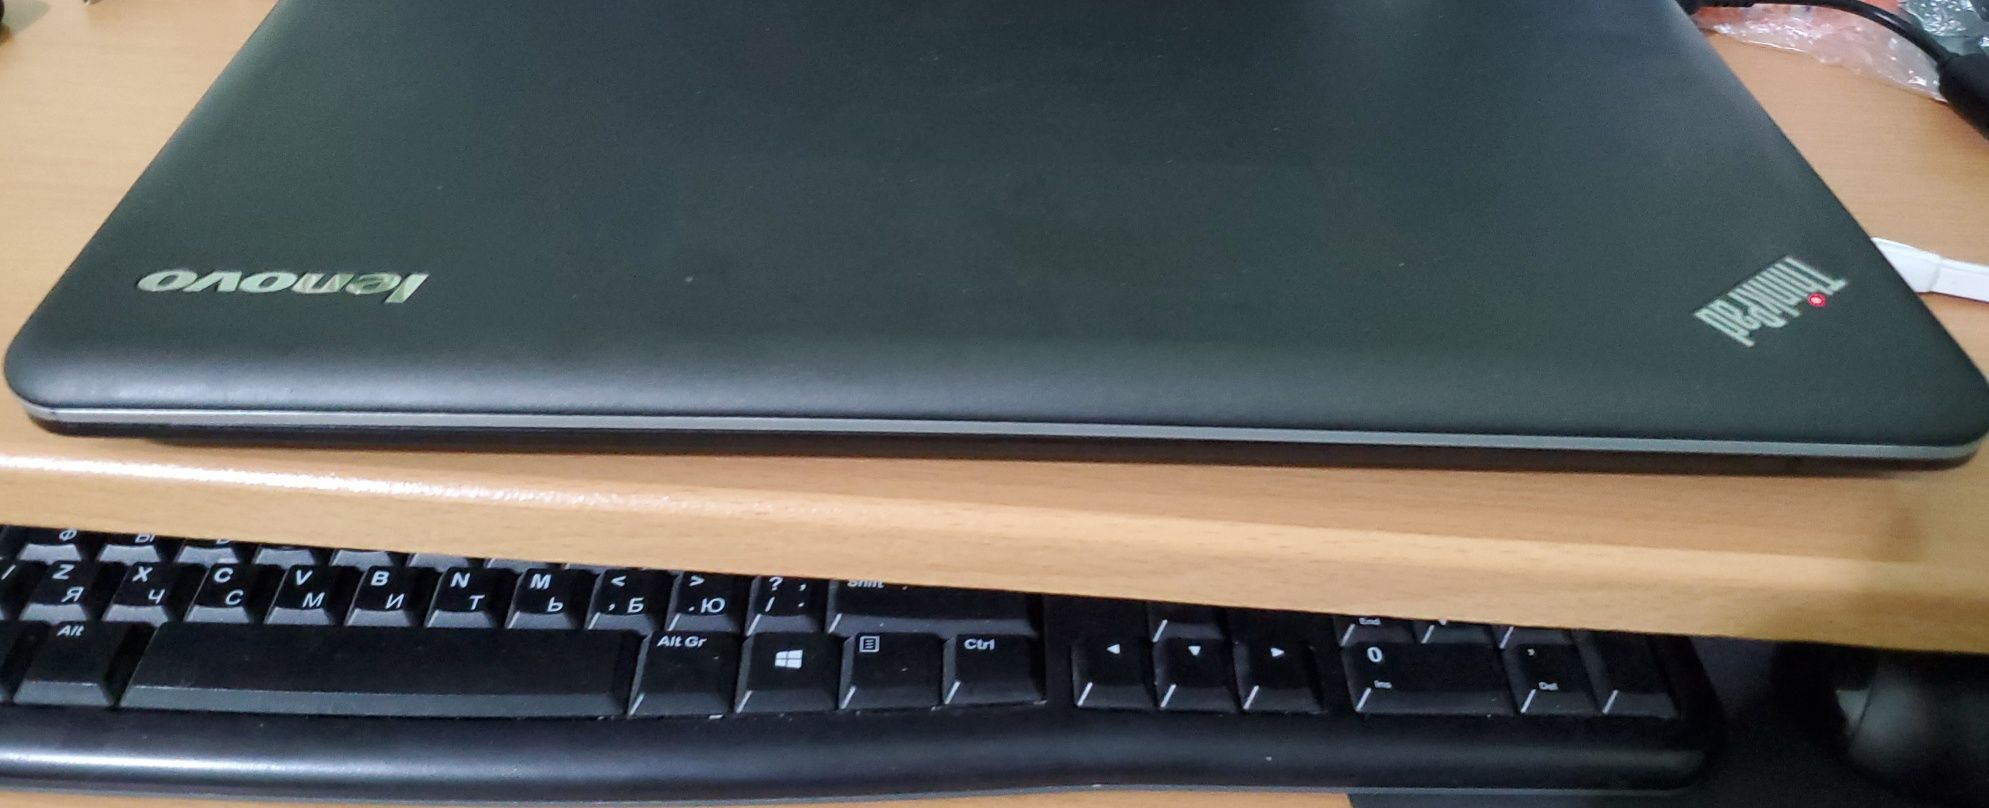 Lenovo ThinkPad edge E540 i3 4000M 2.3 ггц/RAM 8 ГБ/SSD 128 ГБ/ 15.6